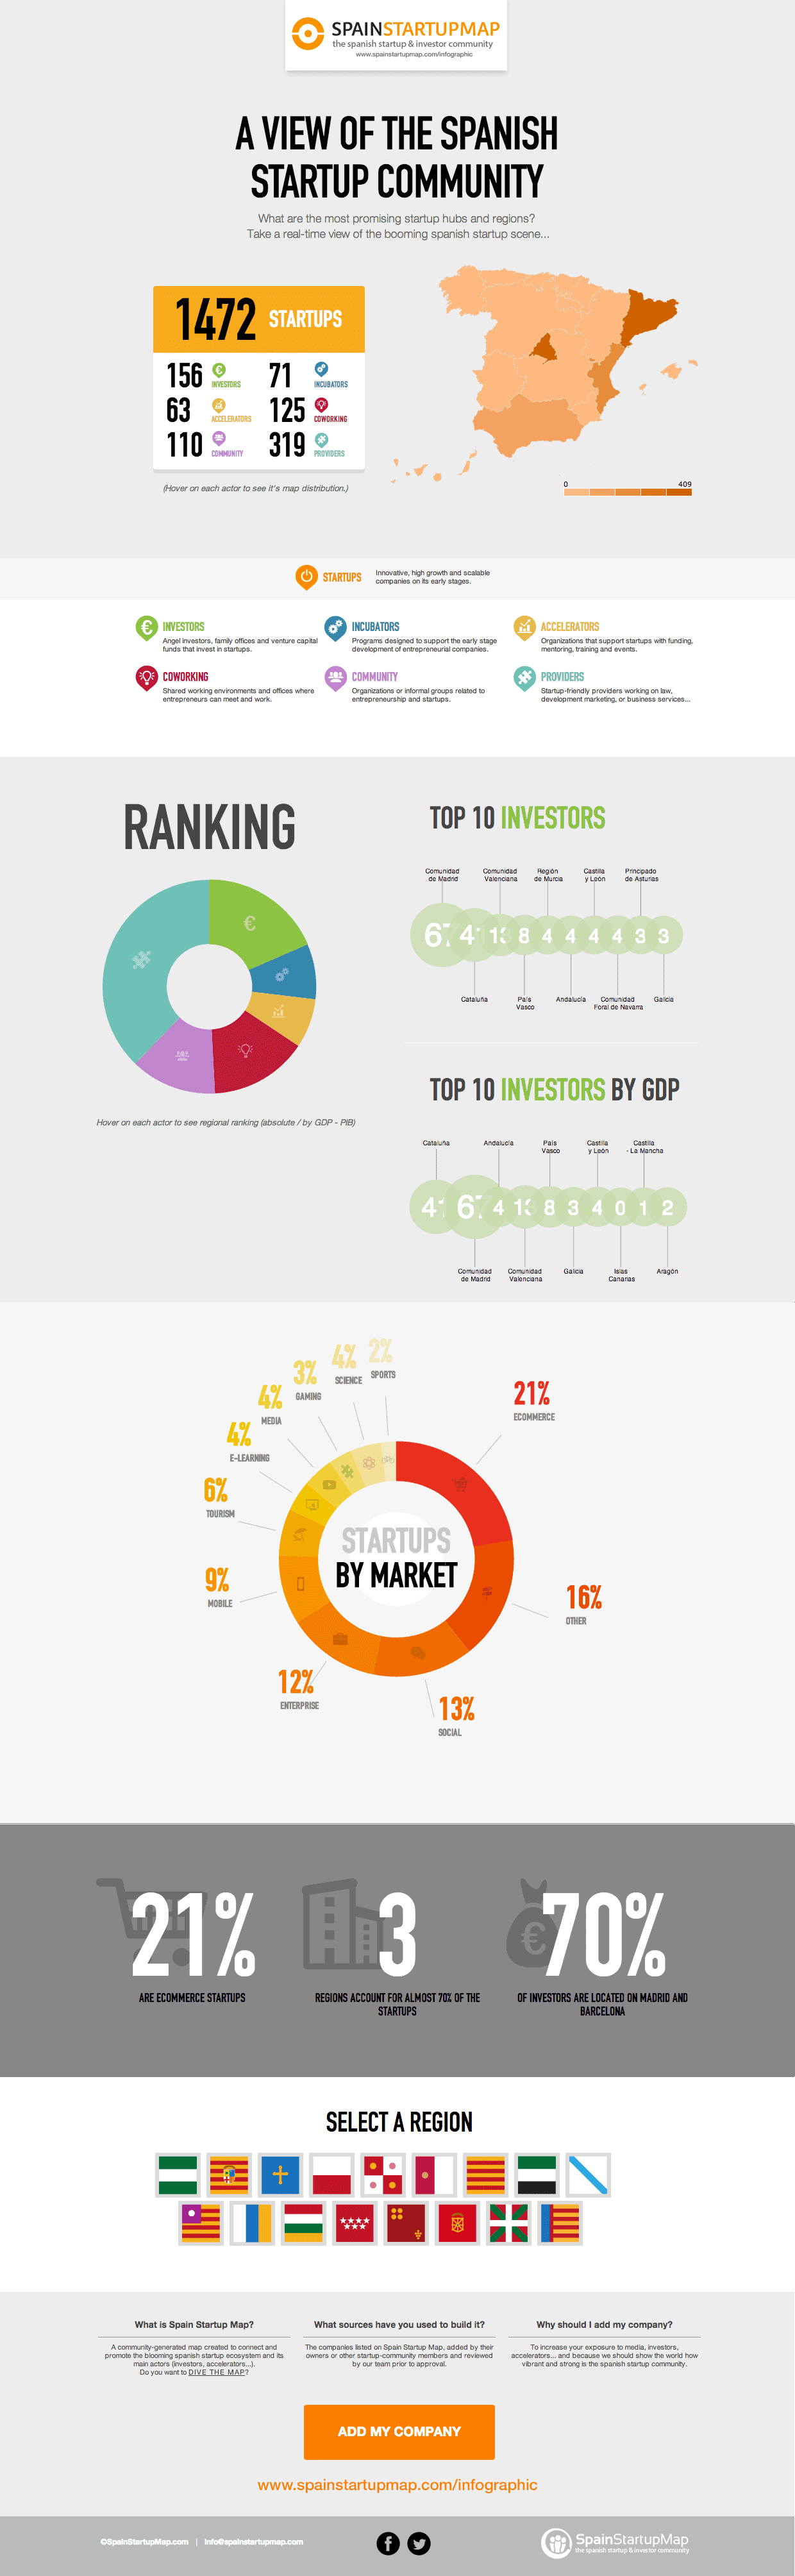 spain-startup-map-infographic-investors-entrepreneurship-jan2014-1-1